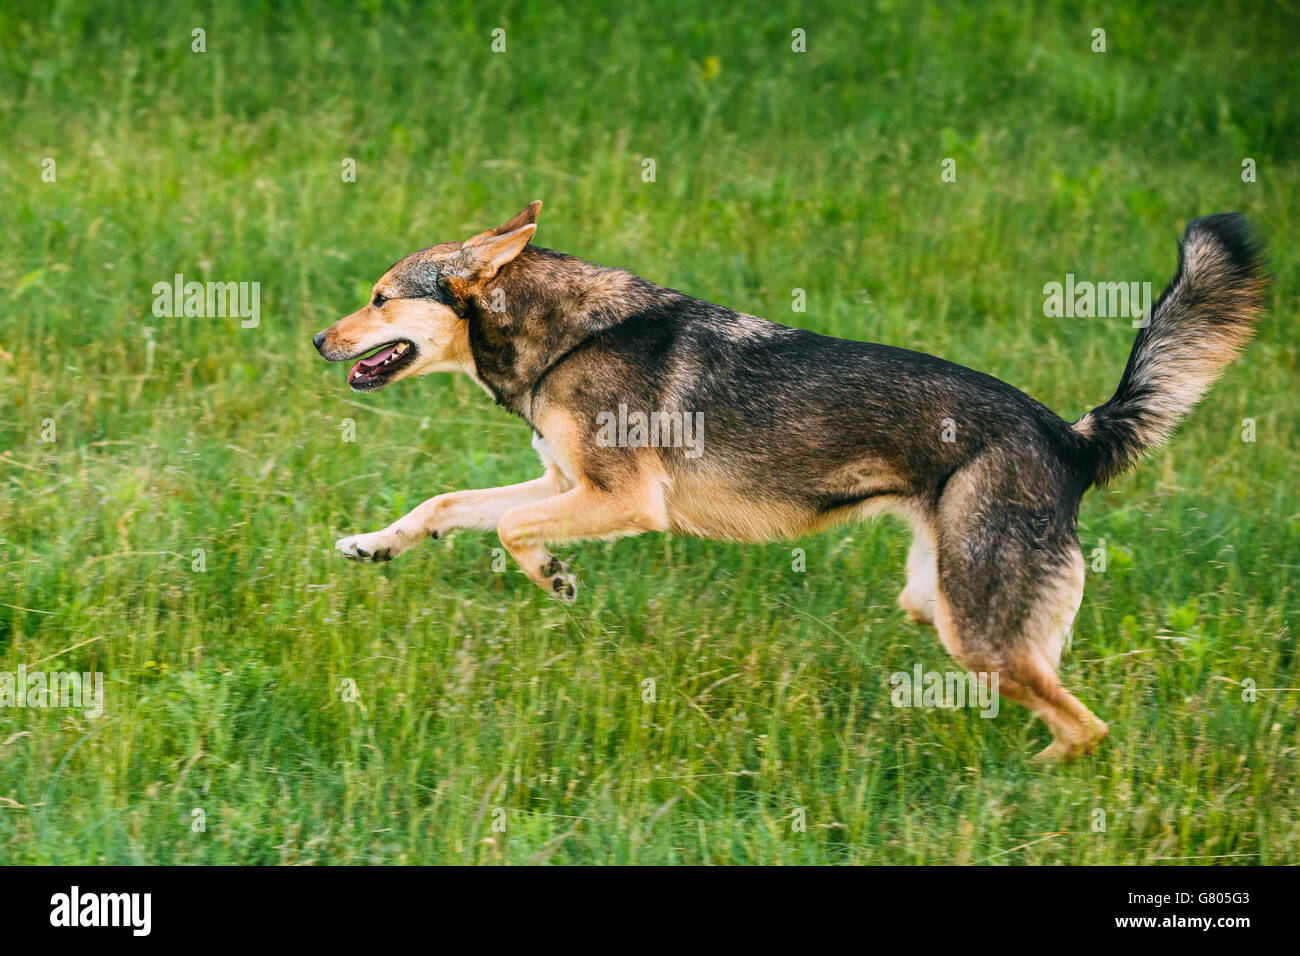 Taille moyenne race mixte chien sur une jambe jouer piscine en été l'herbe. L'exécution de chien heureux Banque D'Images